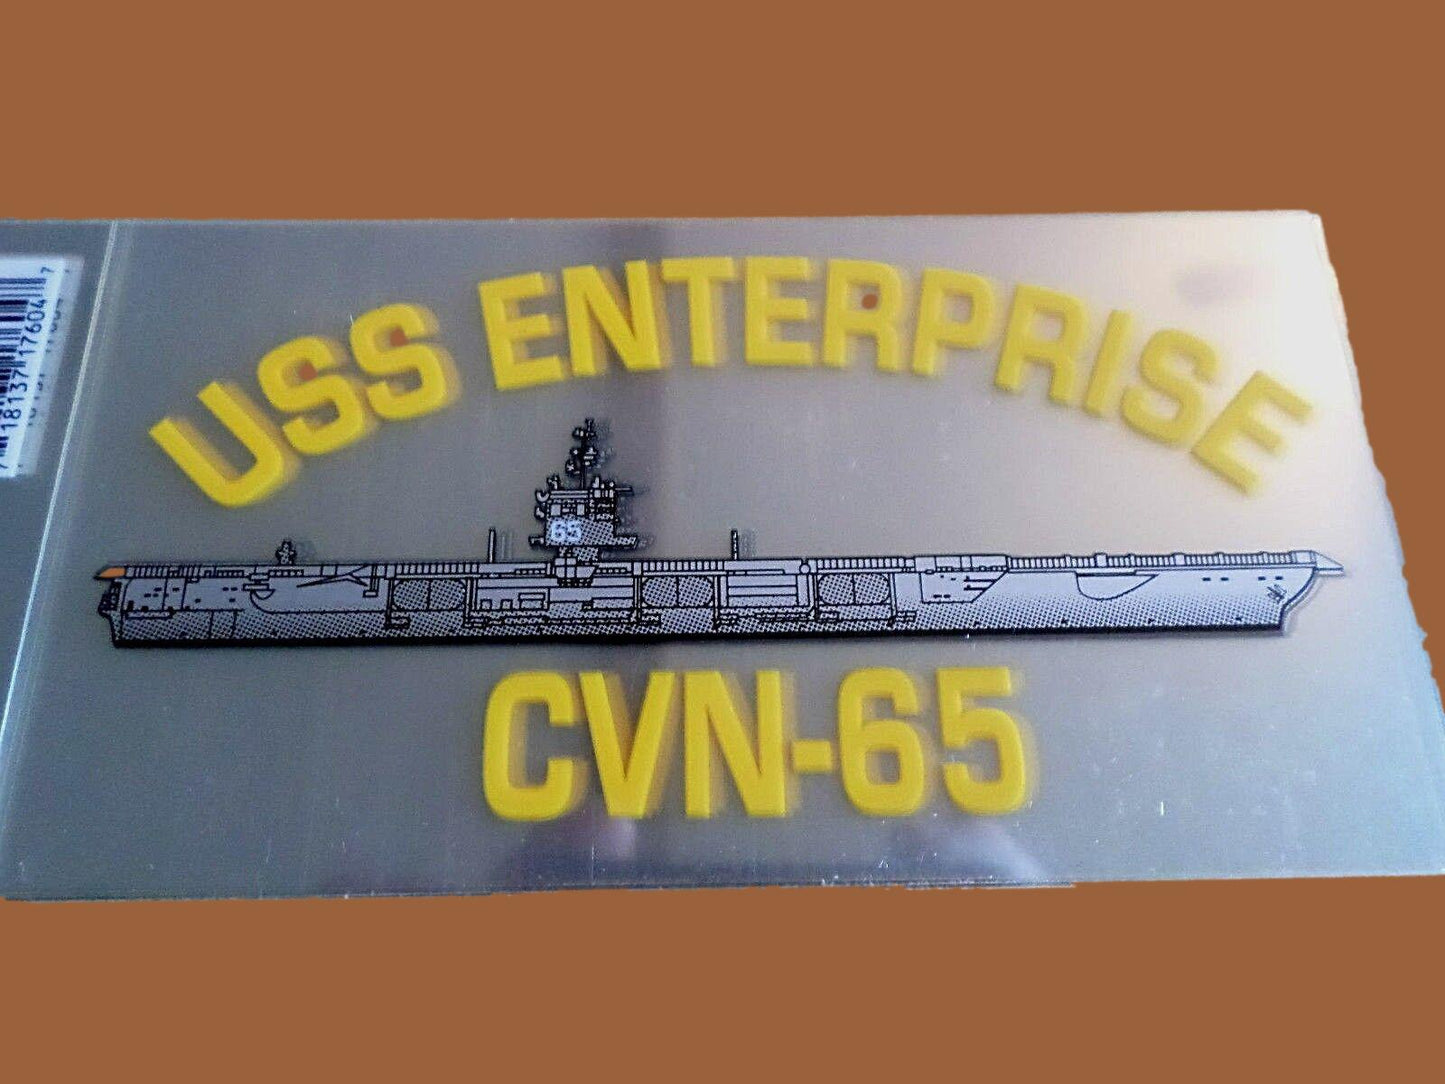 U.S NAVY USS ENTERPRISE CVN-65  WINDOW DECAL BUMPER STICKER OFFICIAL NAVY DECAL